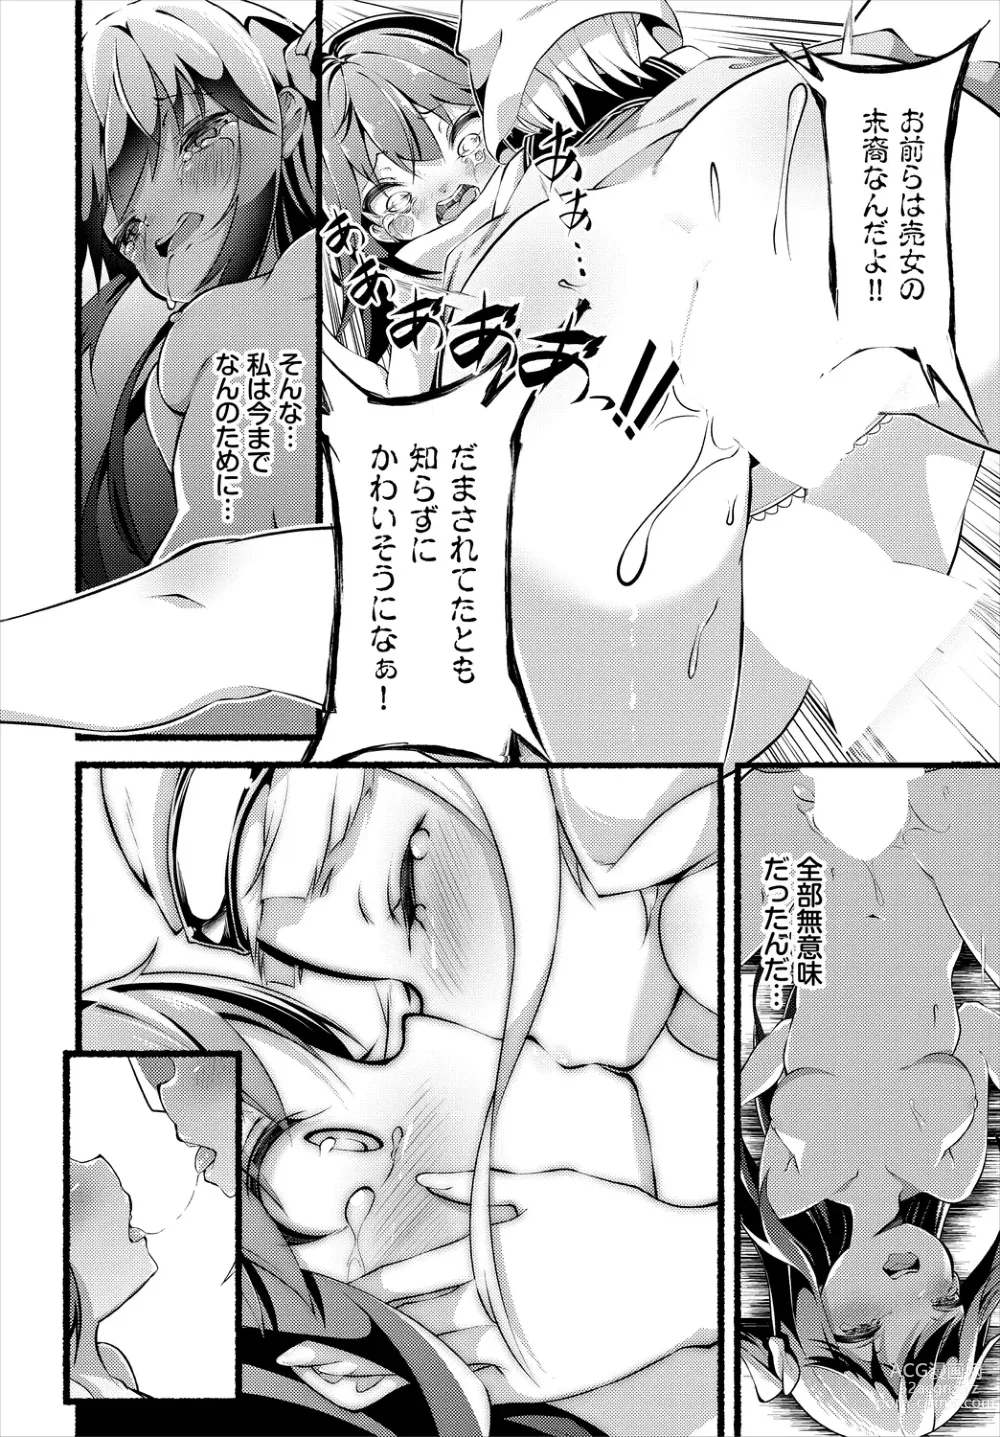 Page 18 of manga INGOKU SADISM